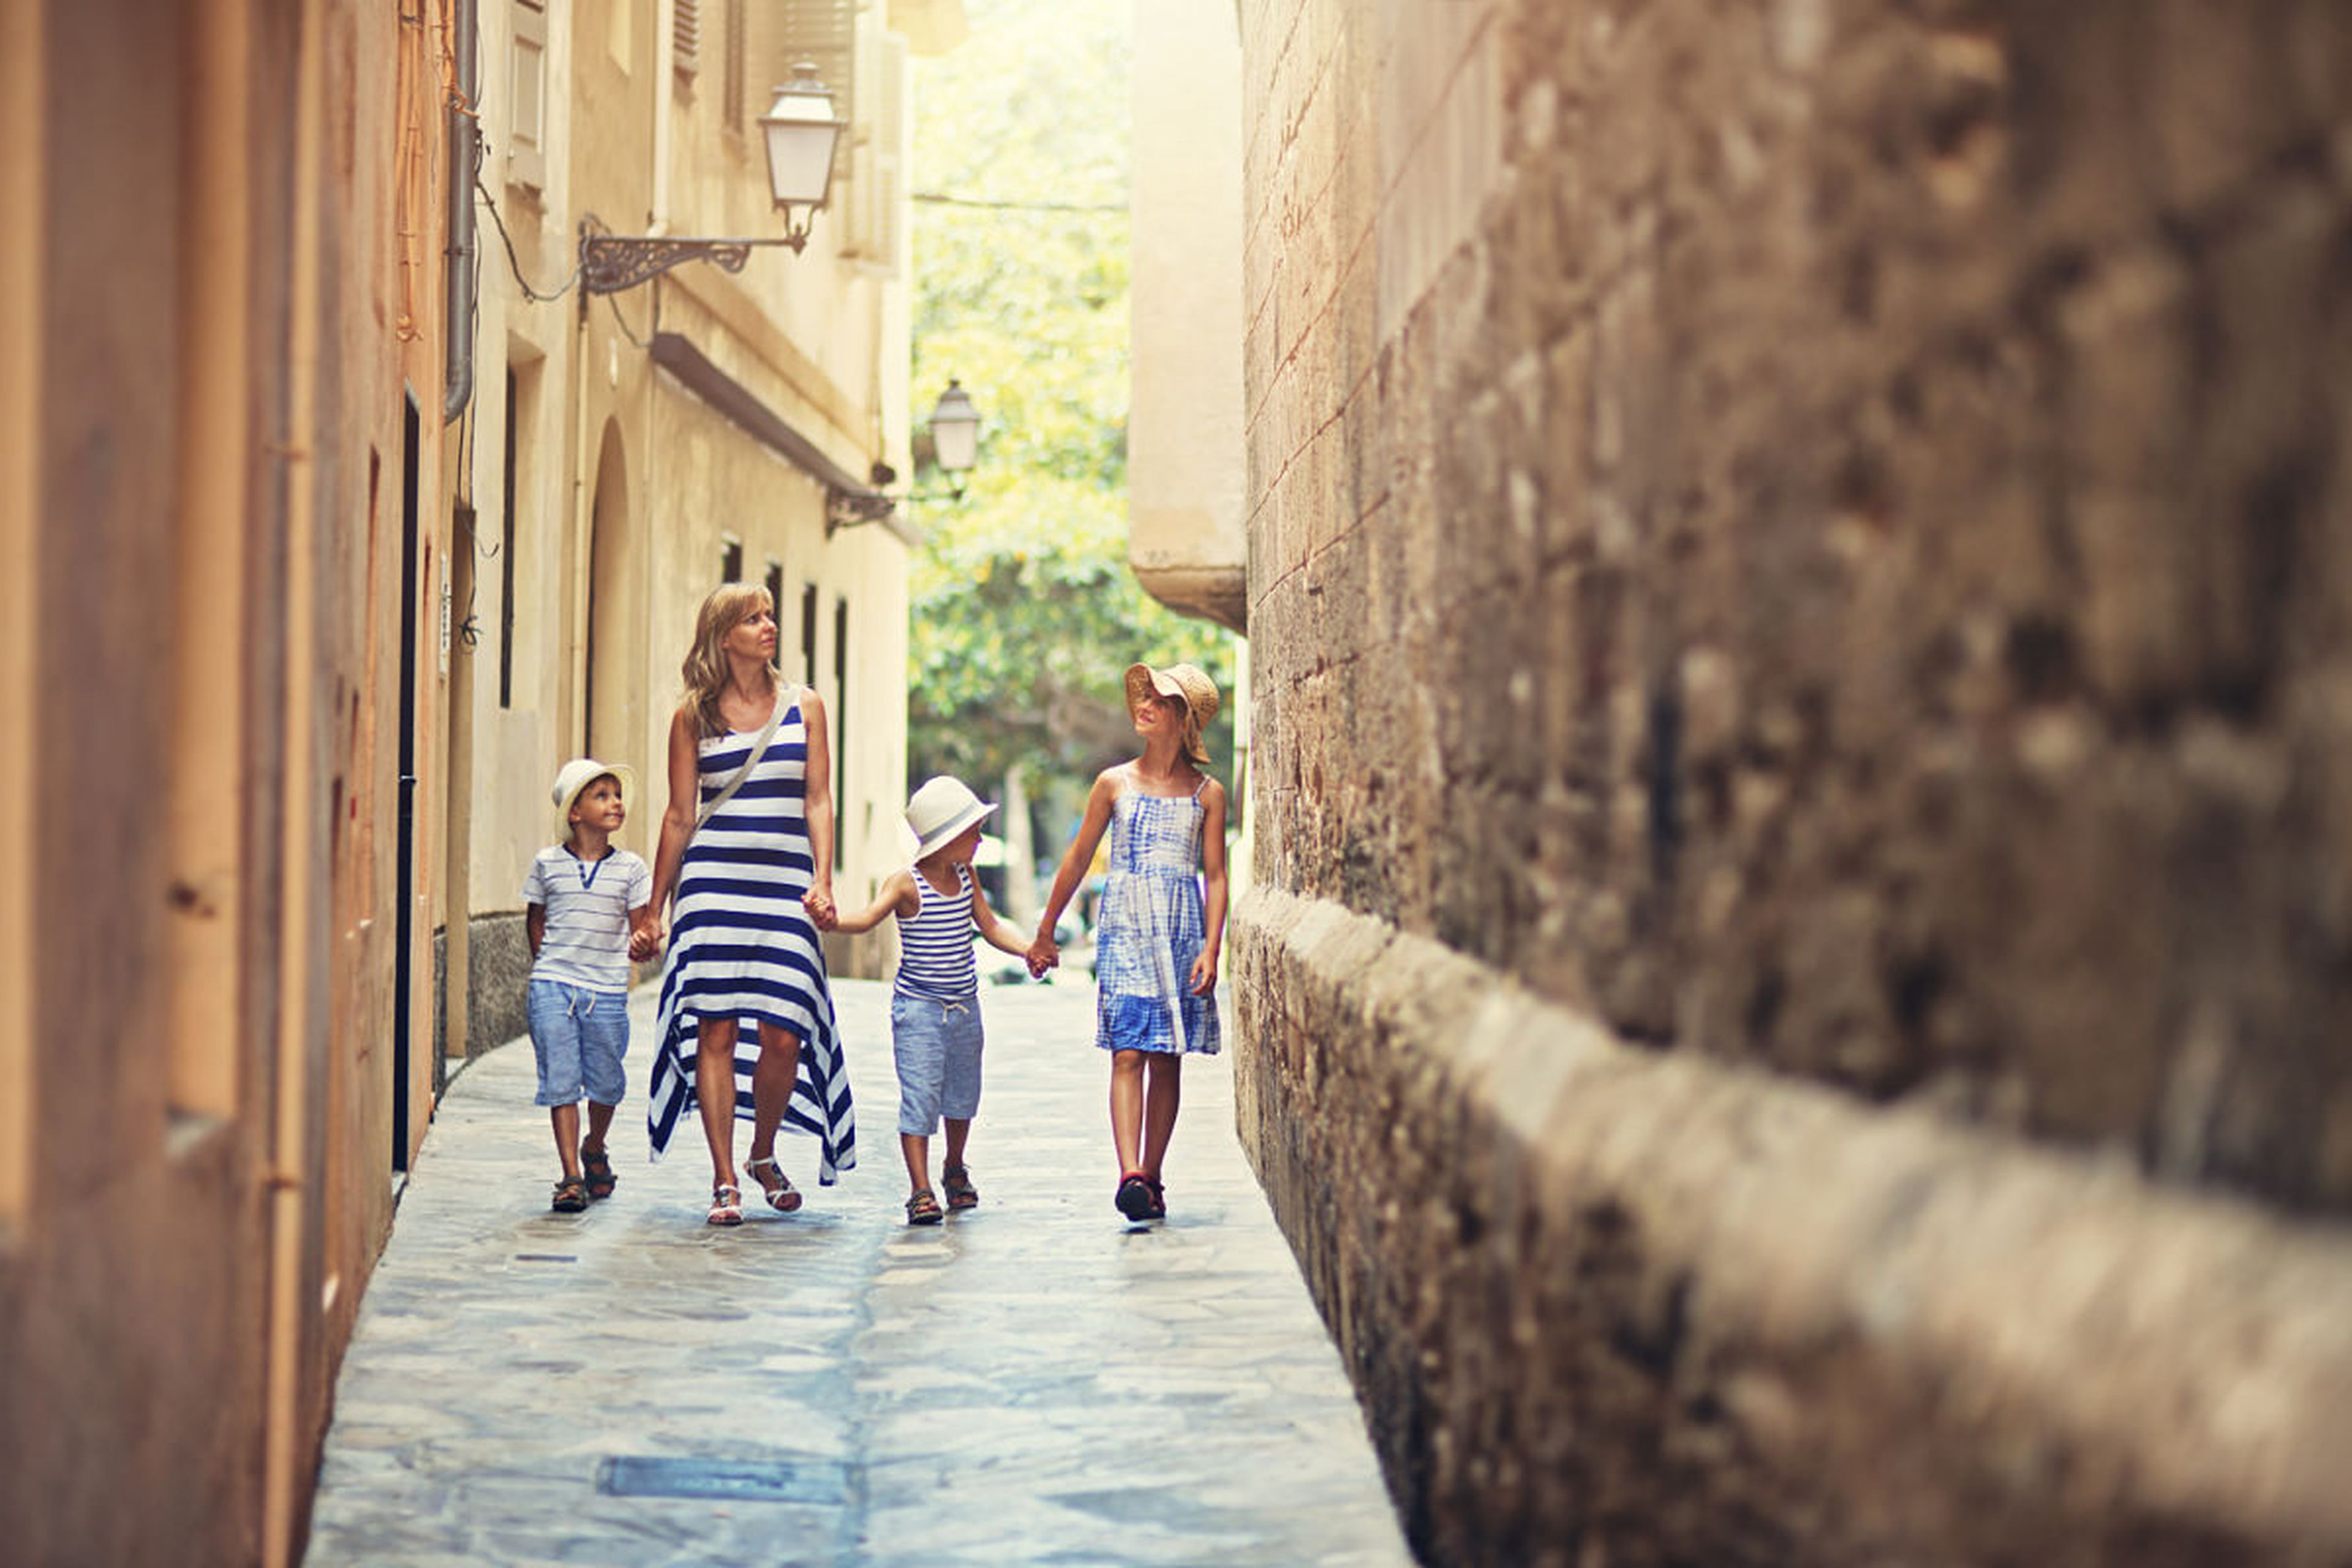 Una familia de turistas pasea por el centro de Palma de Mallorca